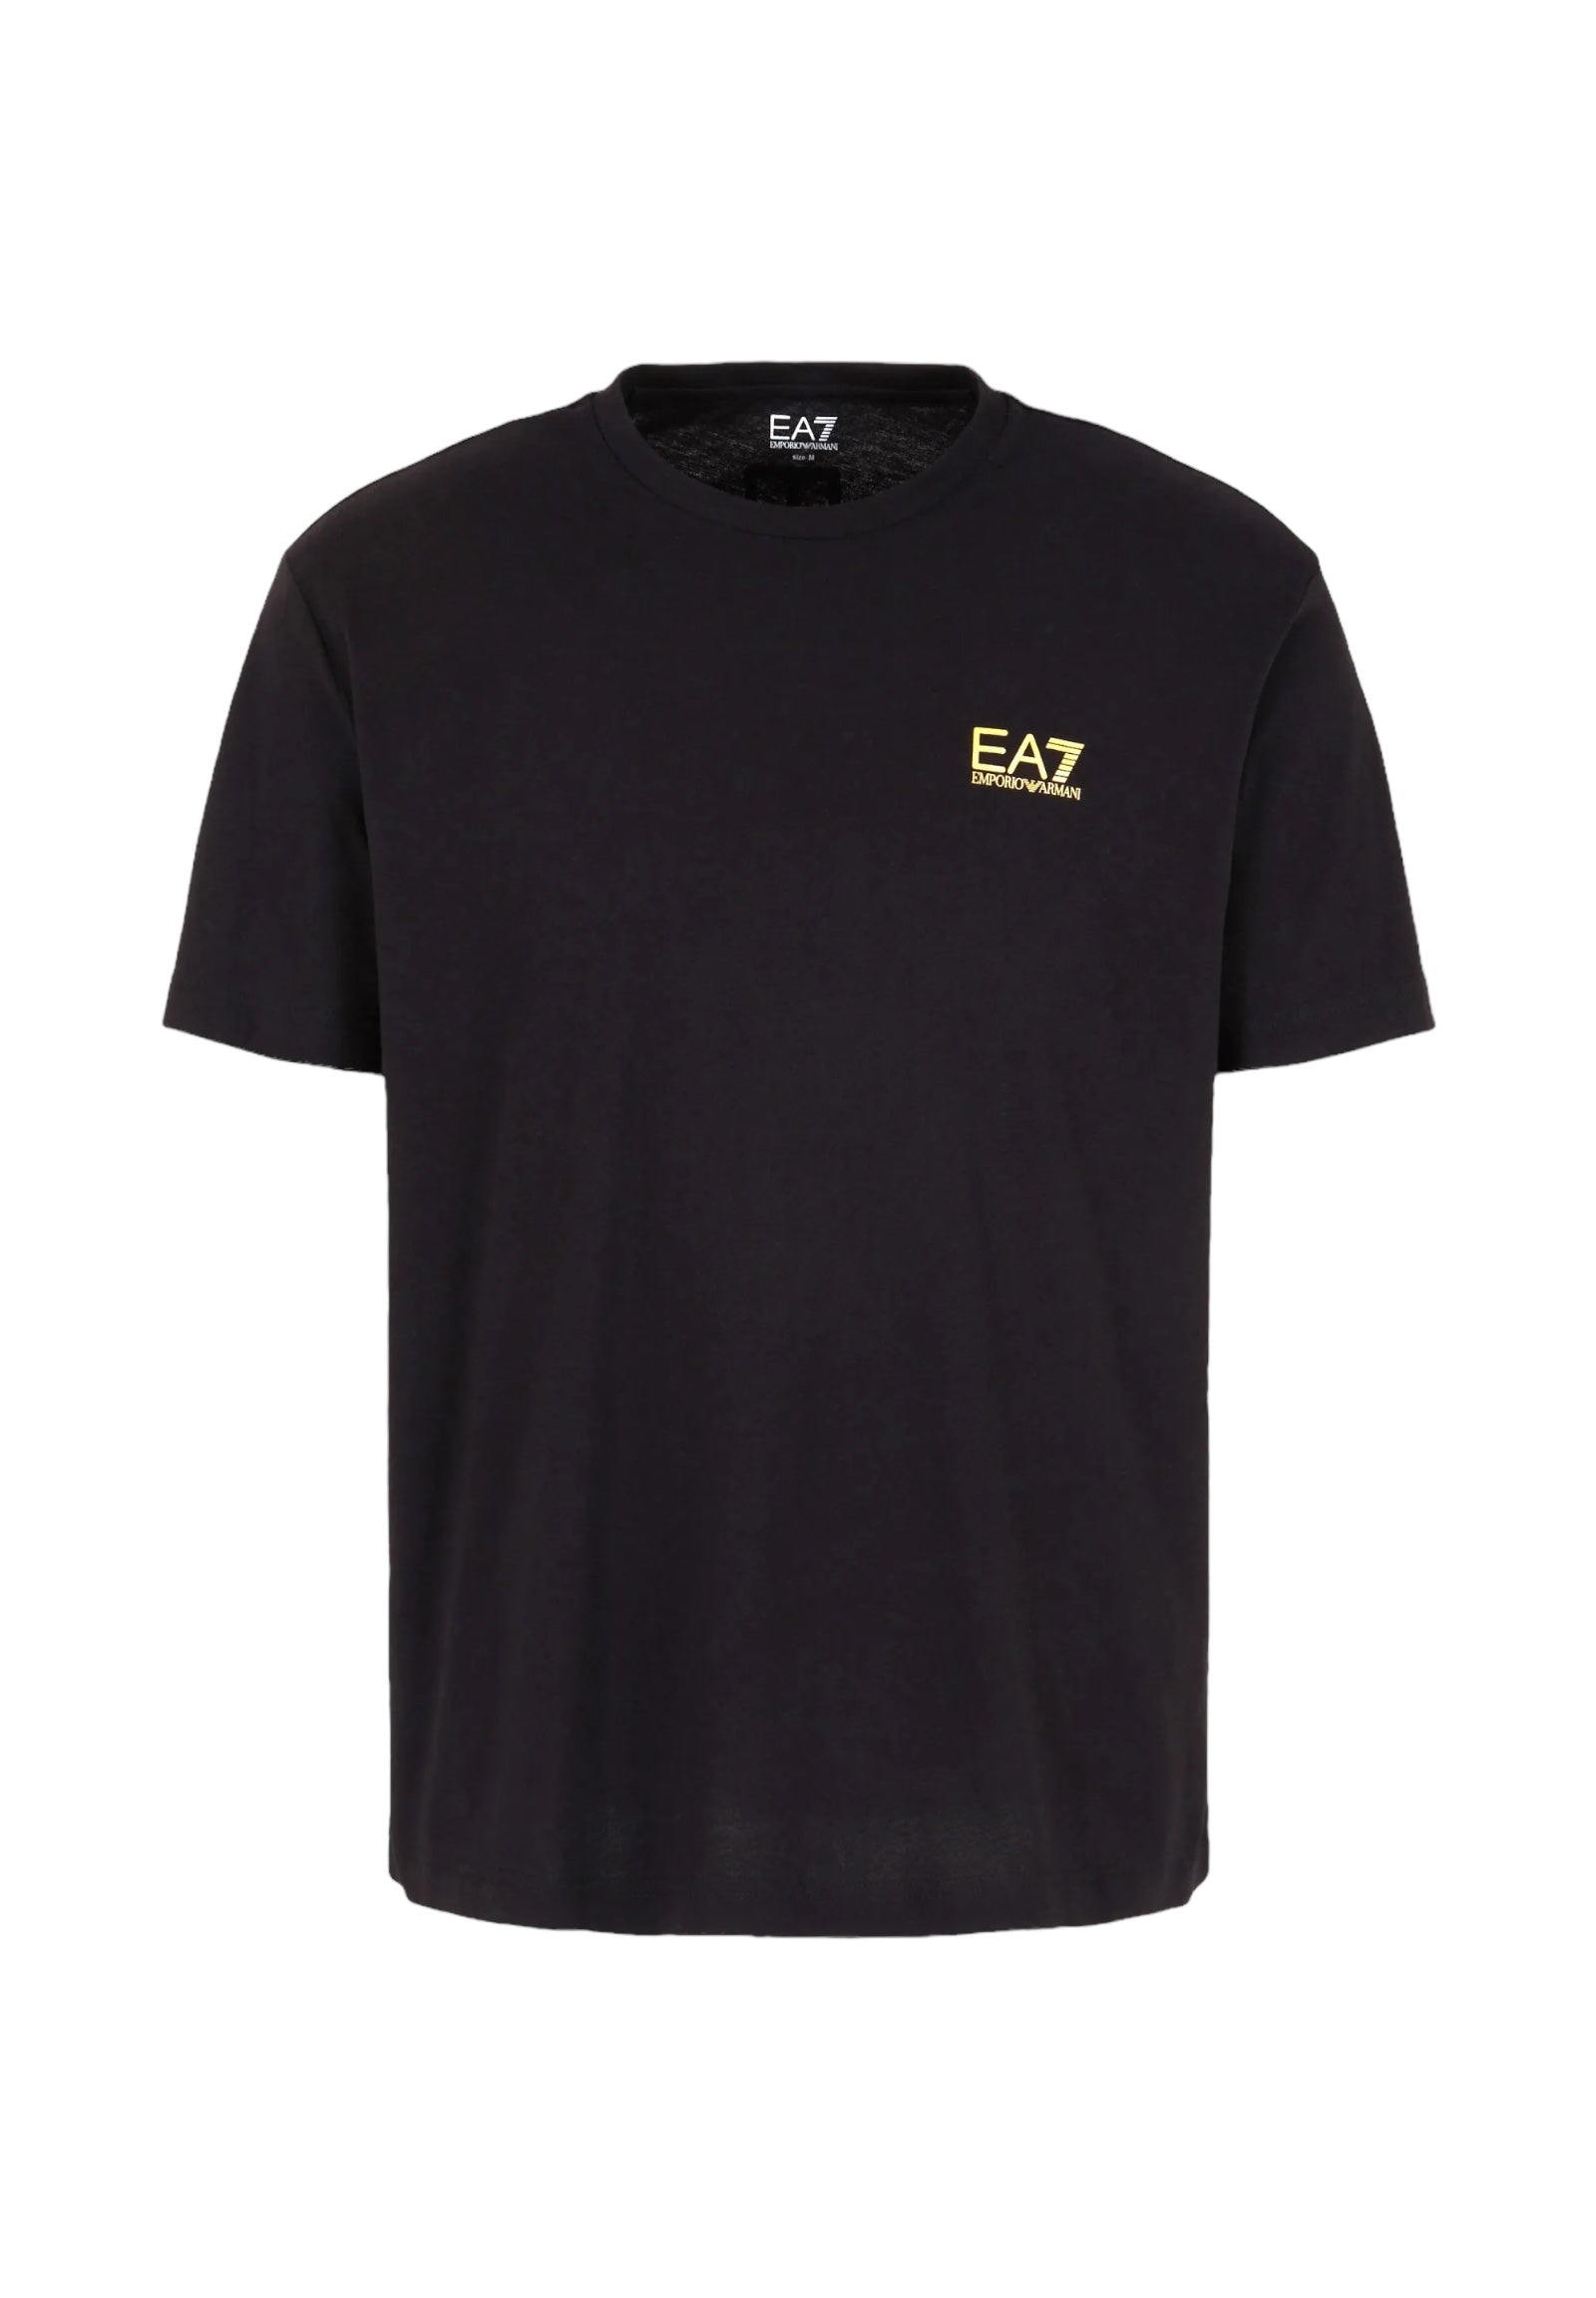 Ea7 Emporio Armani T-Shirt* 8npt18 Black